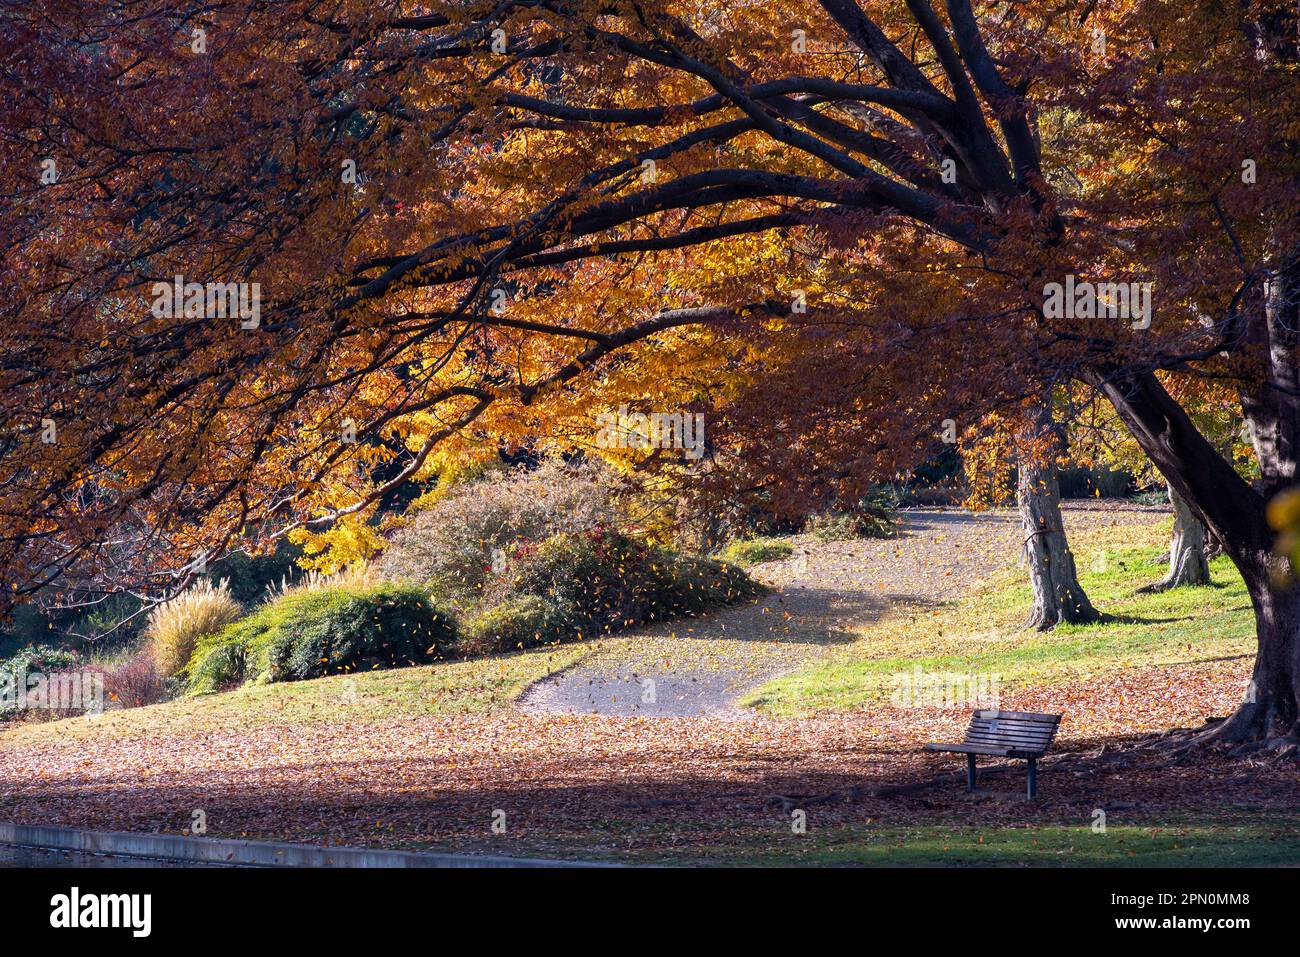 Feuilles tombant d'un arbre à l'arboretum UC Davis, CA, États-Unis, lors d'une belle journée ensoleillée, avec une passerelle et un banc Banque D'Images